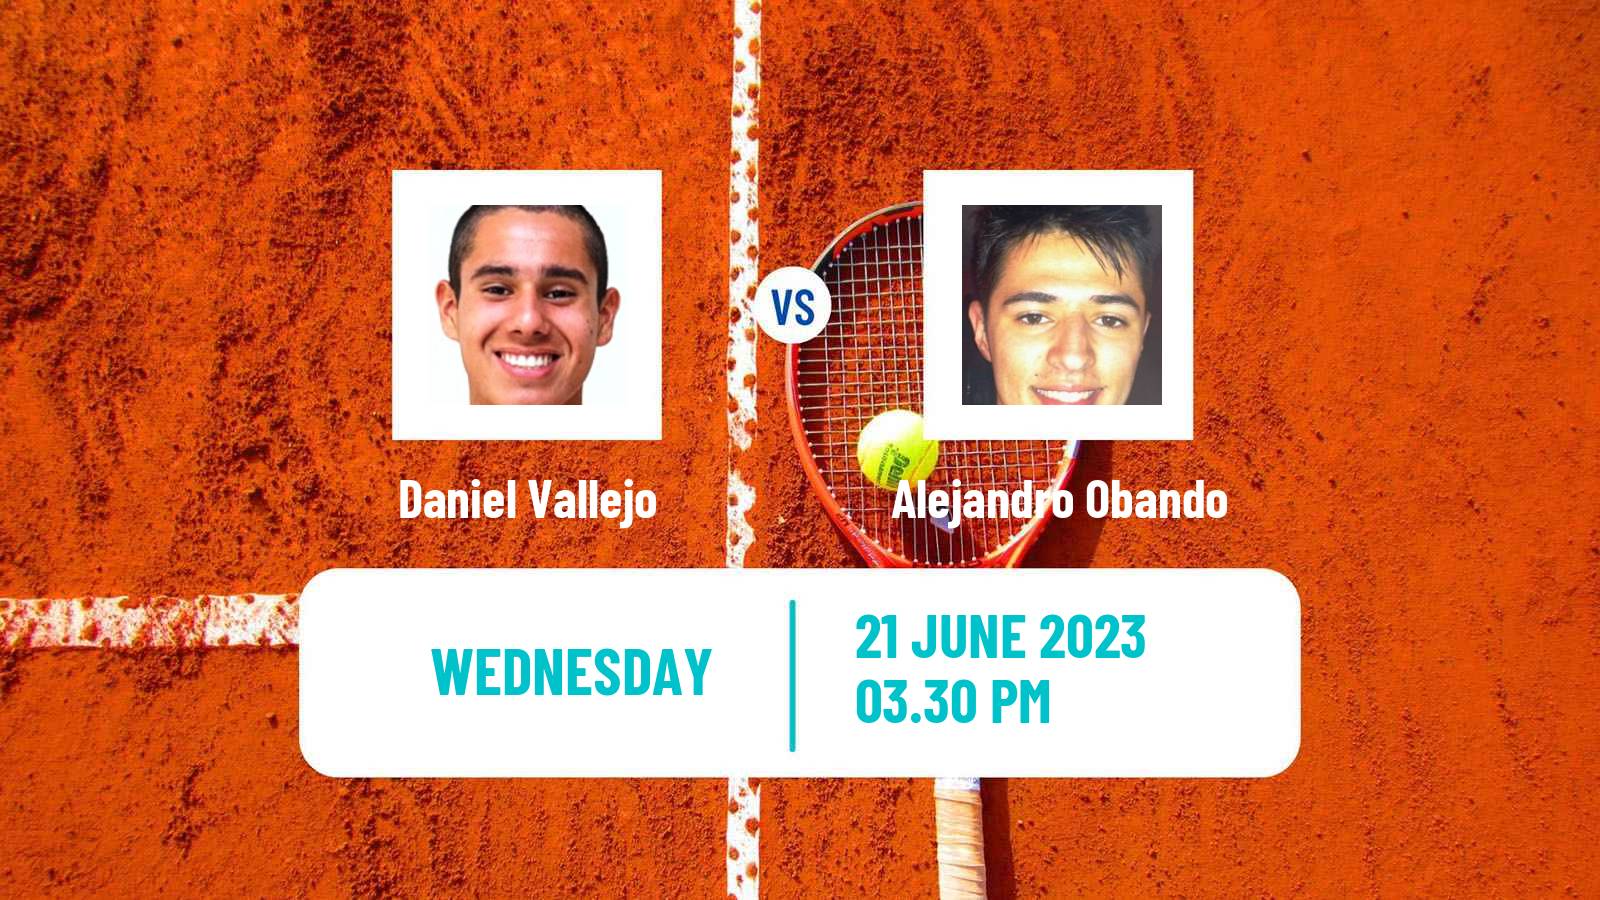 Tennis Davis Cup Group III Daniel Vallejo - Alejandro Obando